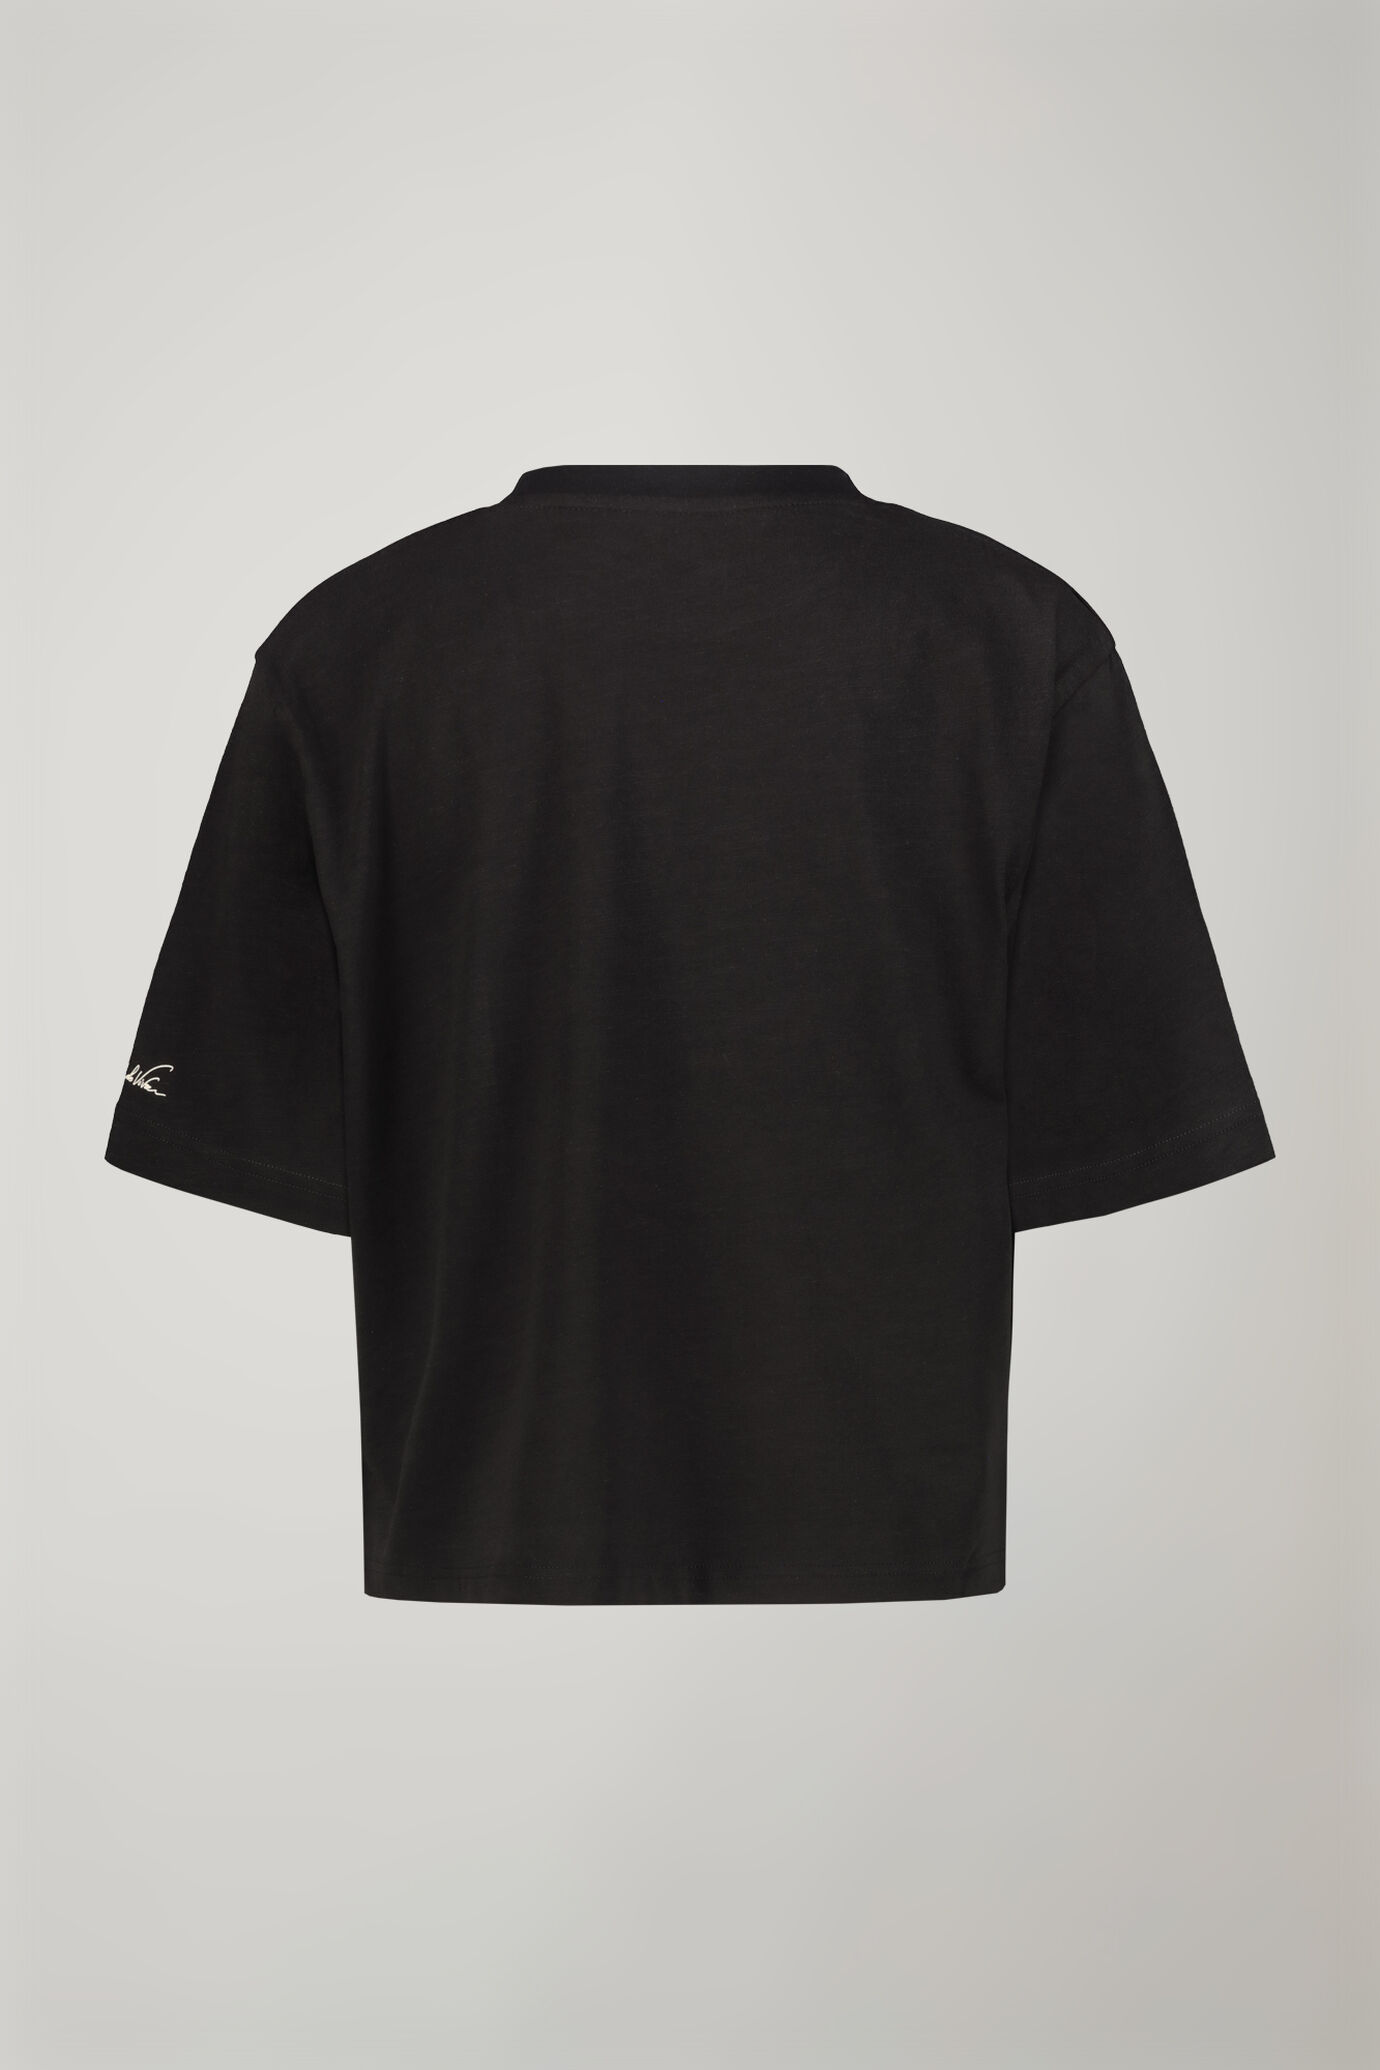 Damen-T-Shirt mit Rundhalsausschnitt aus 100 % Baumwolle in normaler Passform image number 6